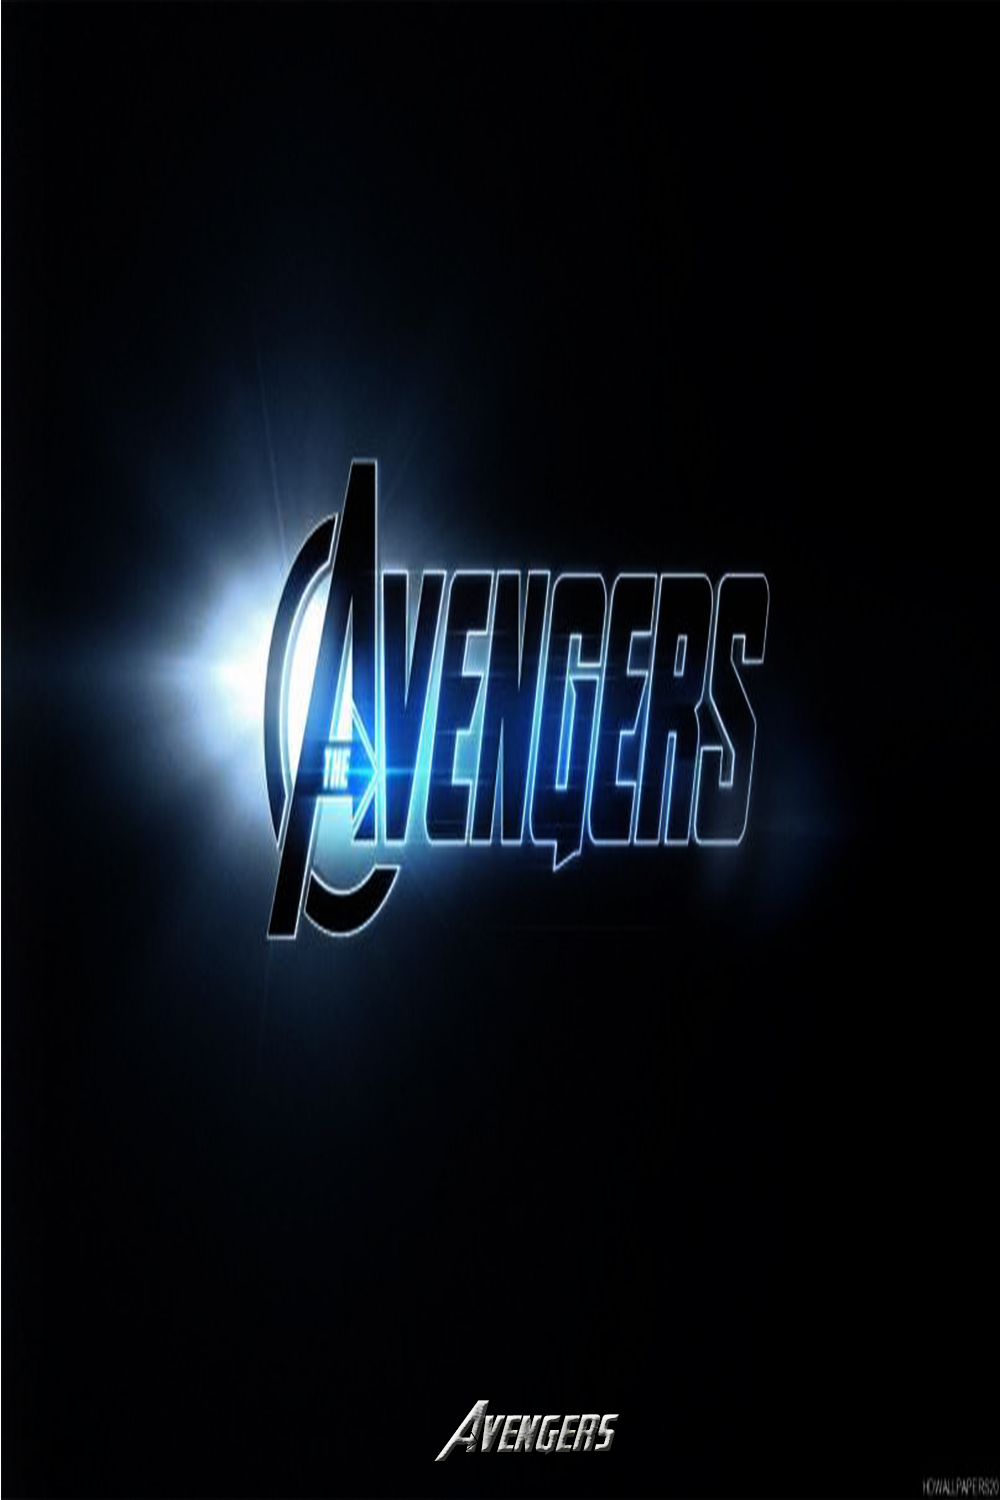 Avengers Wallpaper 4k,,avengers Wallpaper For Mobile,,avengers - Graphic  Design - 1000x1500 Wallpaper 